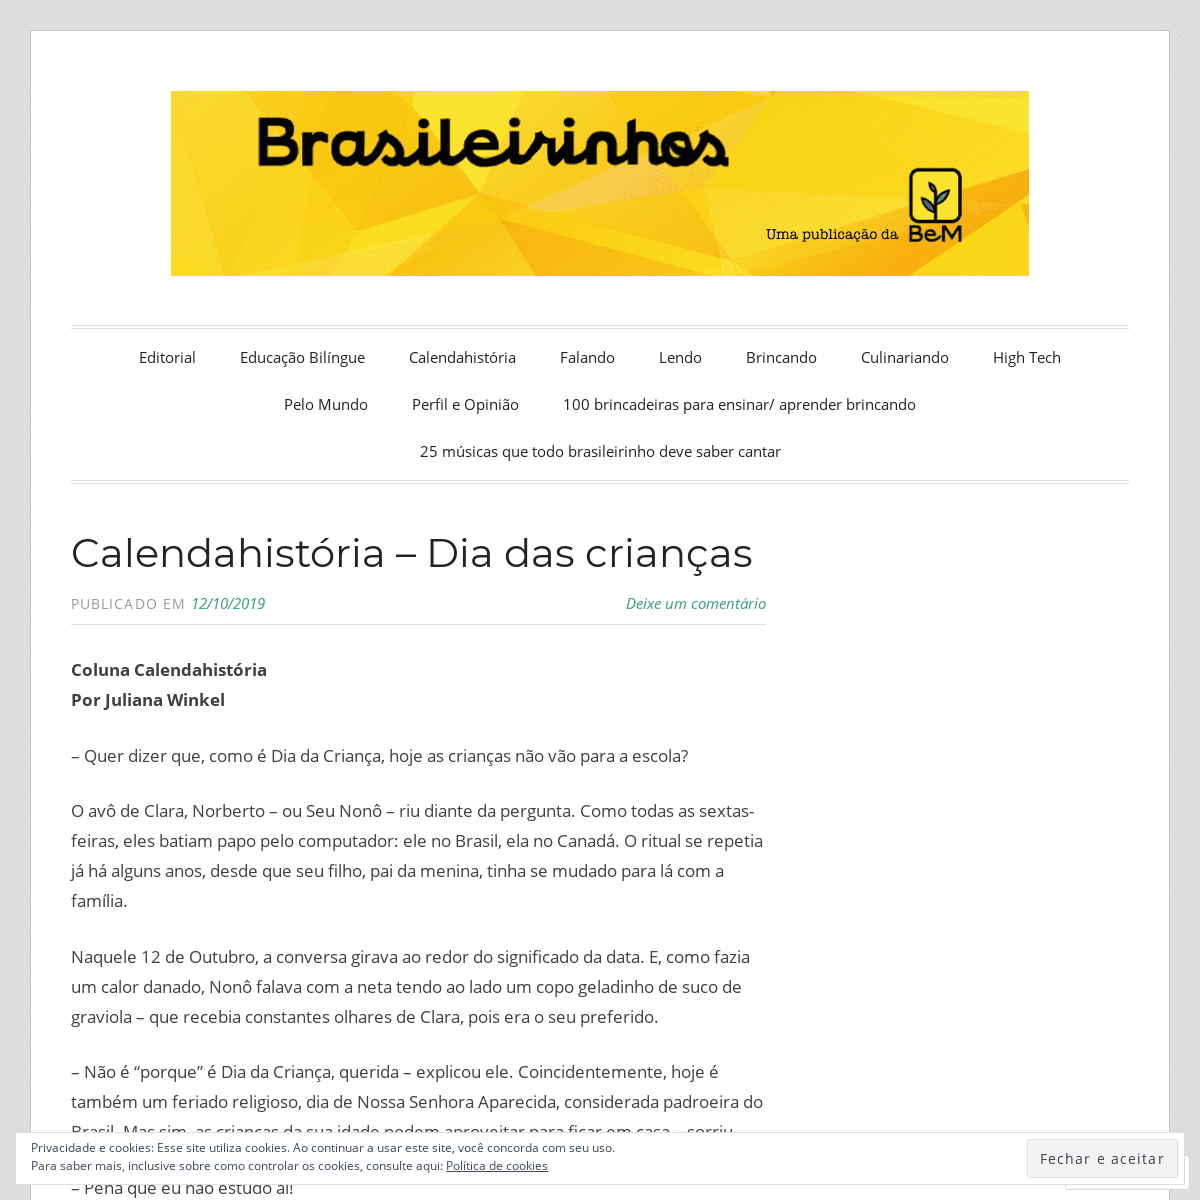 A complete backup of brasileirinhos.wordpress.com